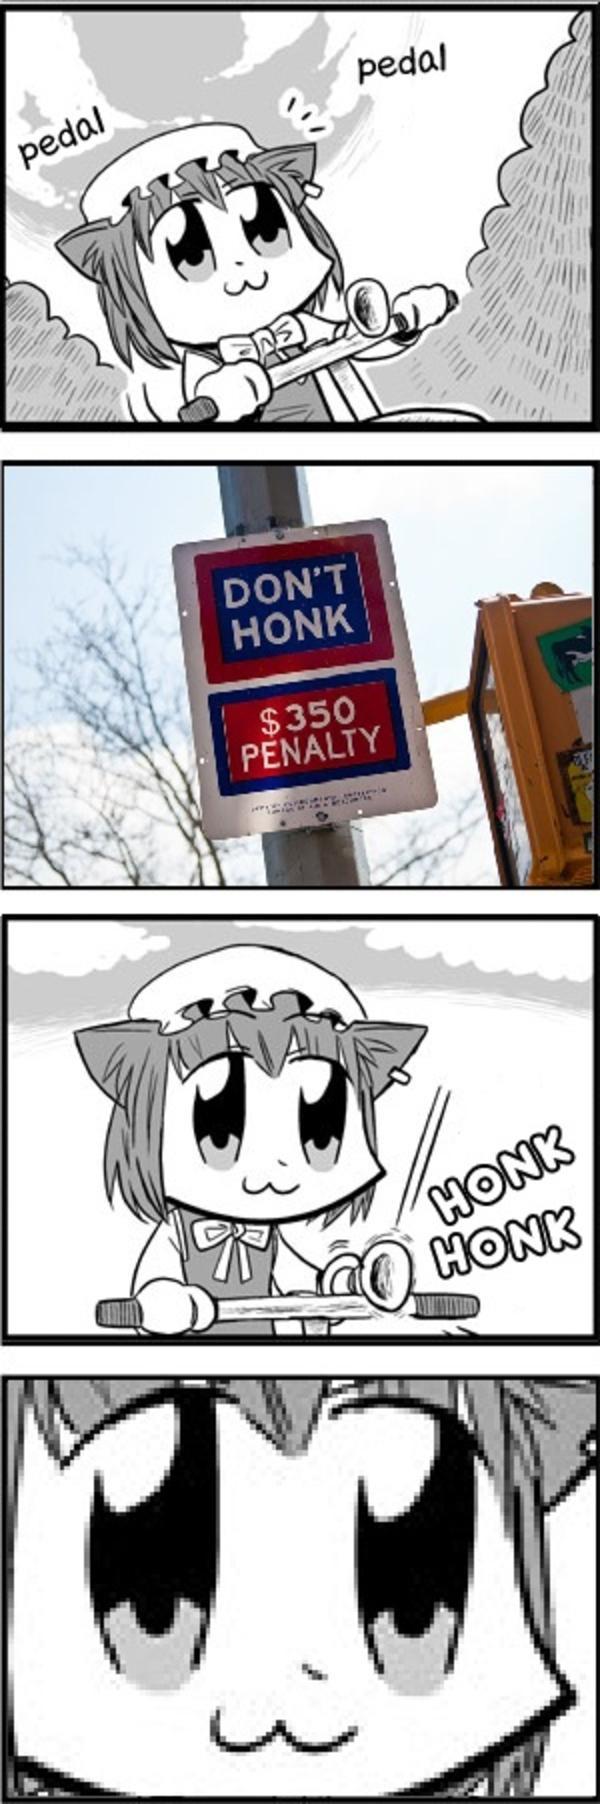 Honk honk motherfucker - meme